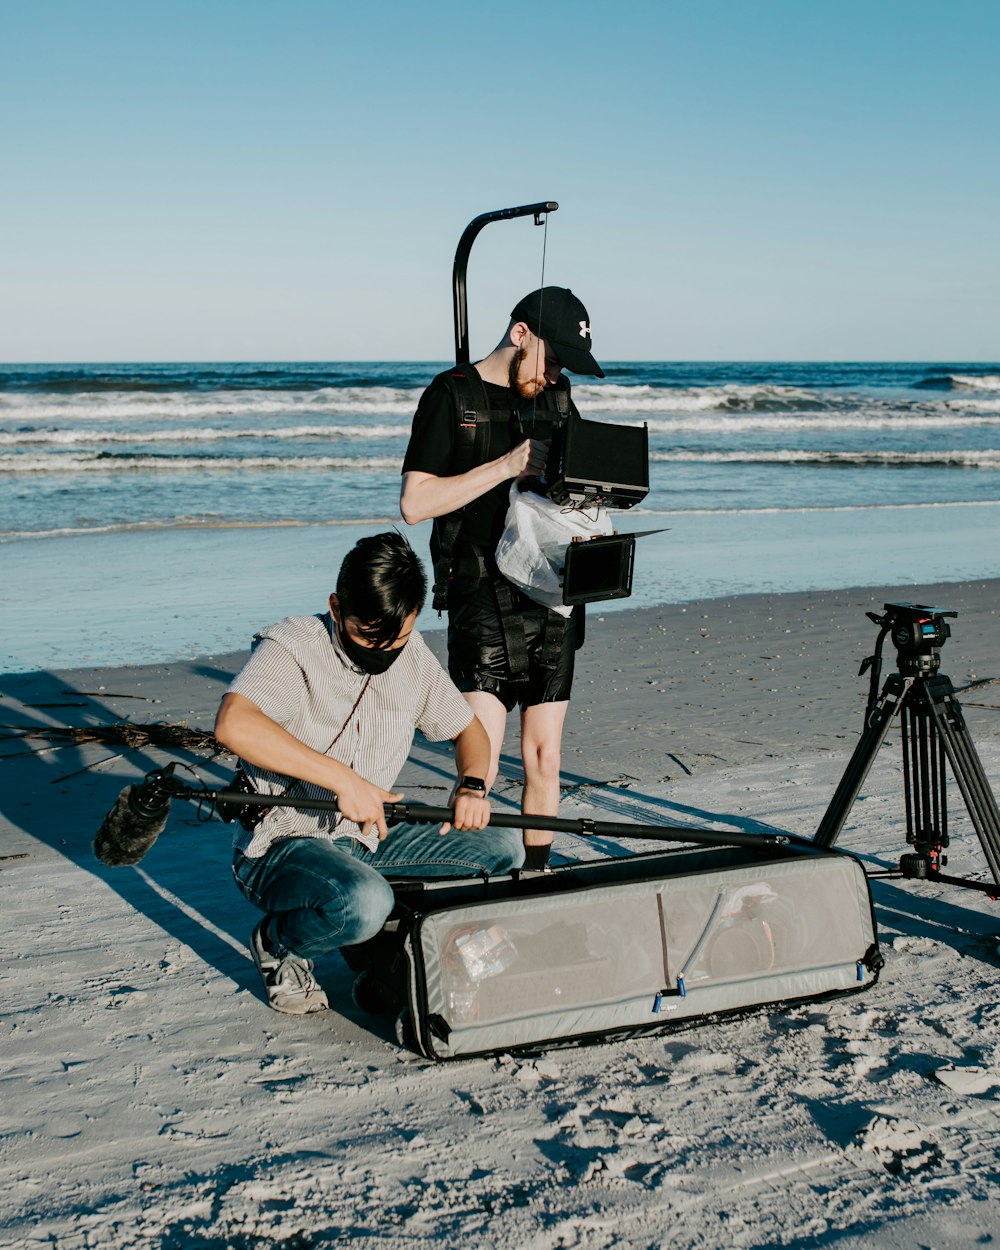 Un homme filme un autre homme sur la plage